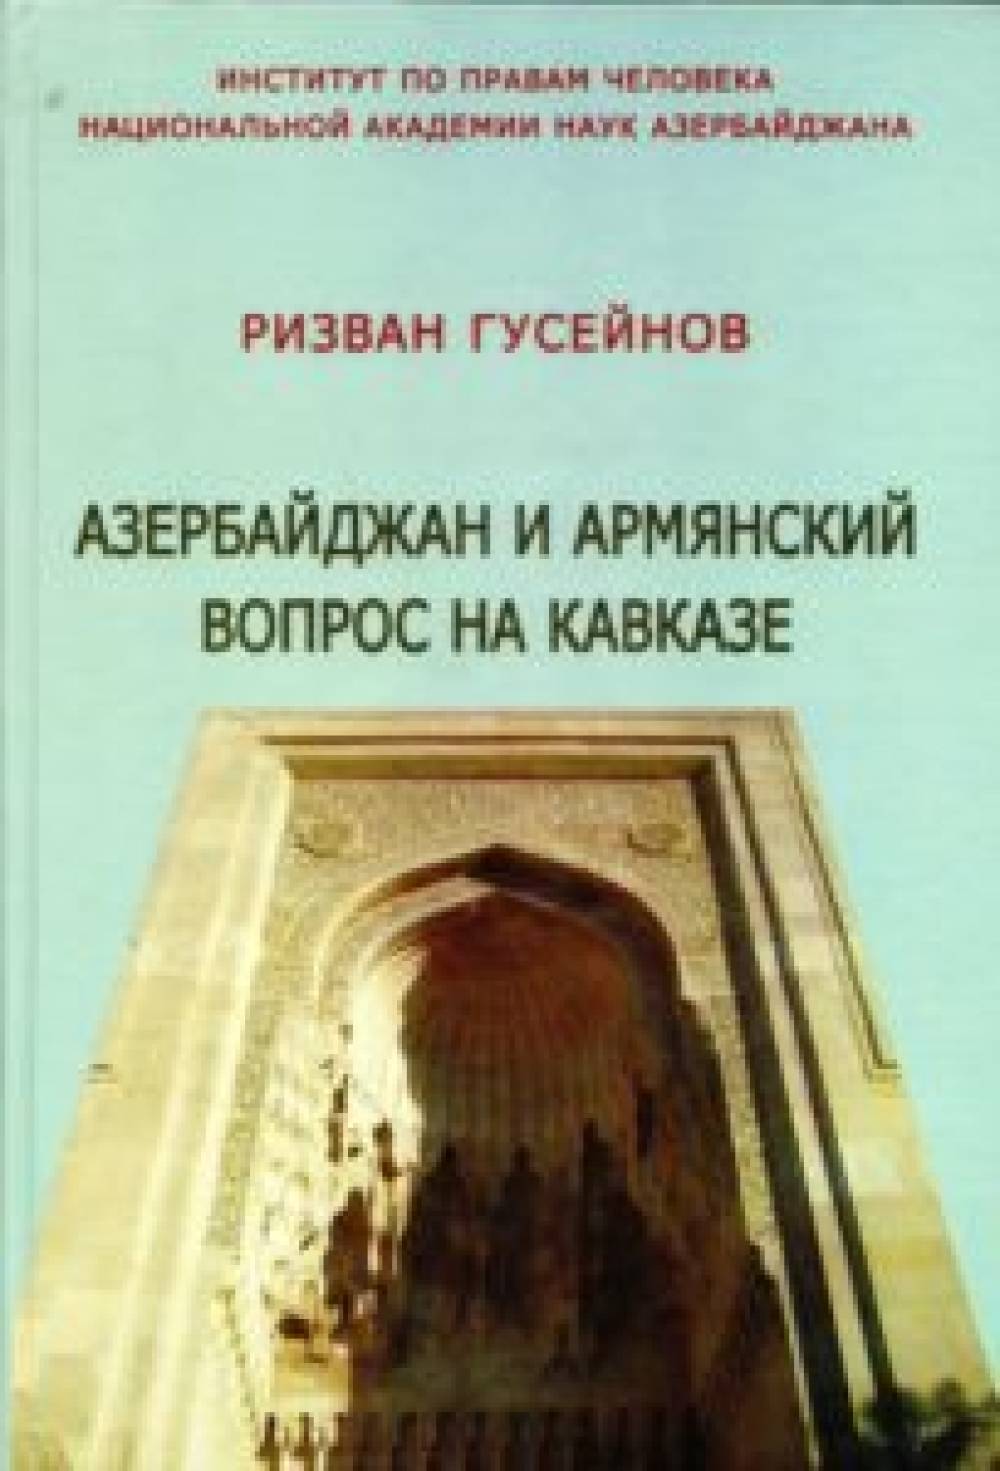 P.H.Гусейнов " Азербайджан и армянский вопрос на Кавказе"